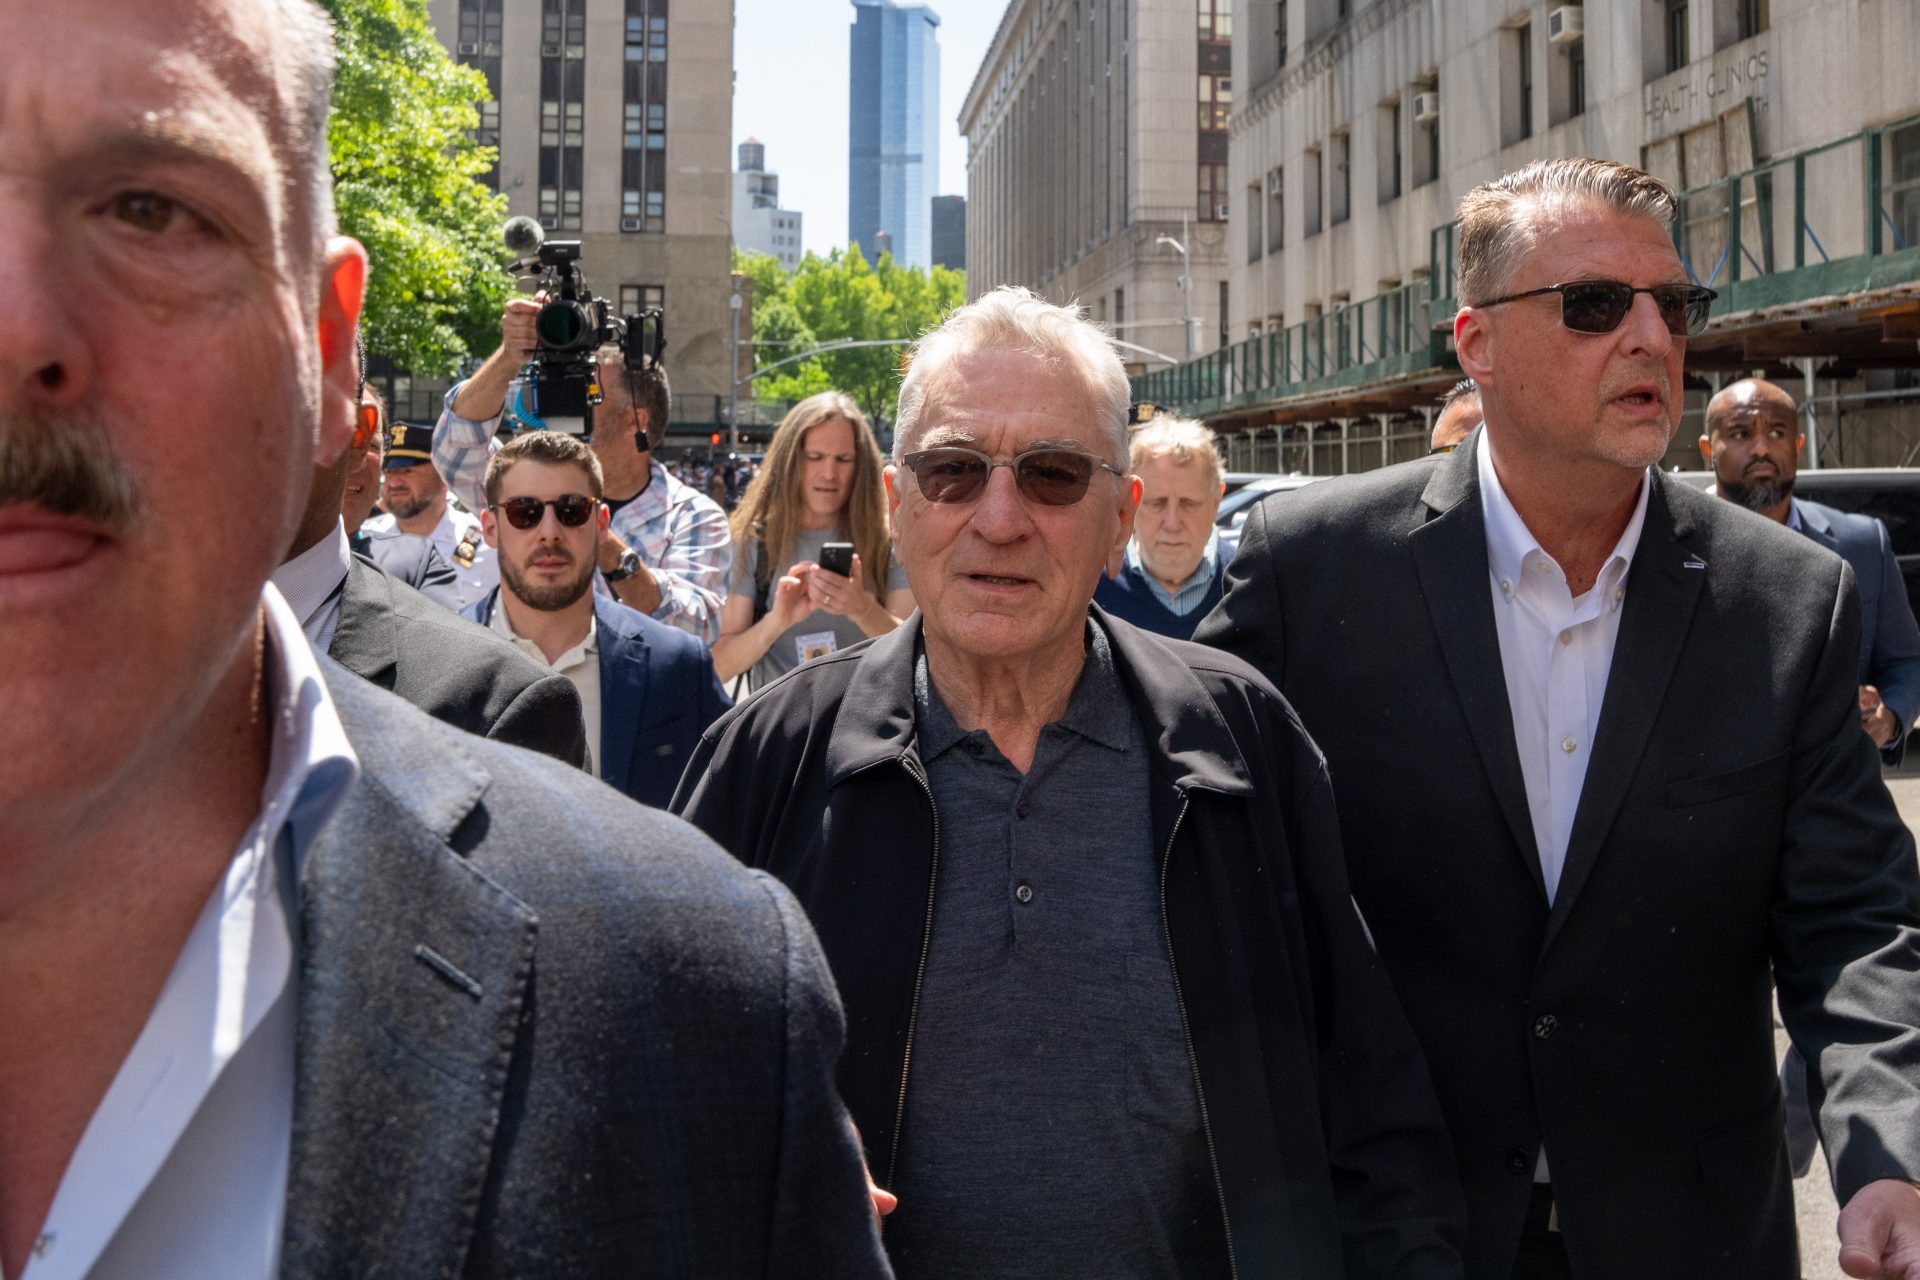 De Niro vs. Trump: Duell auf offener Straße in NYC